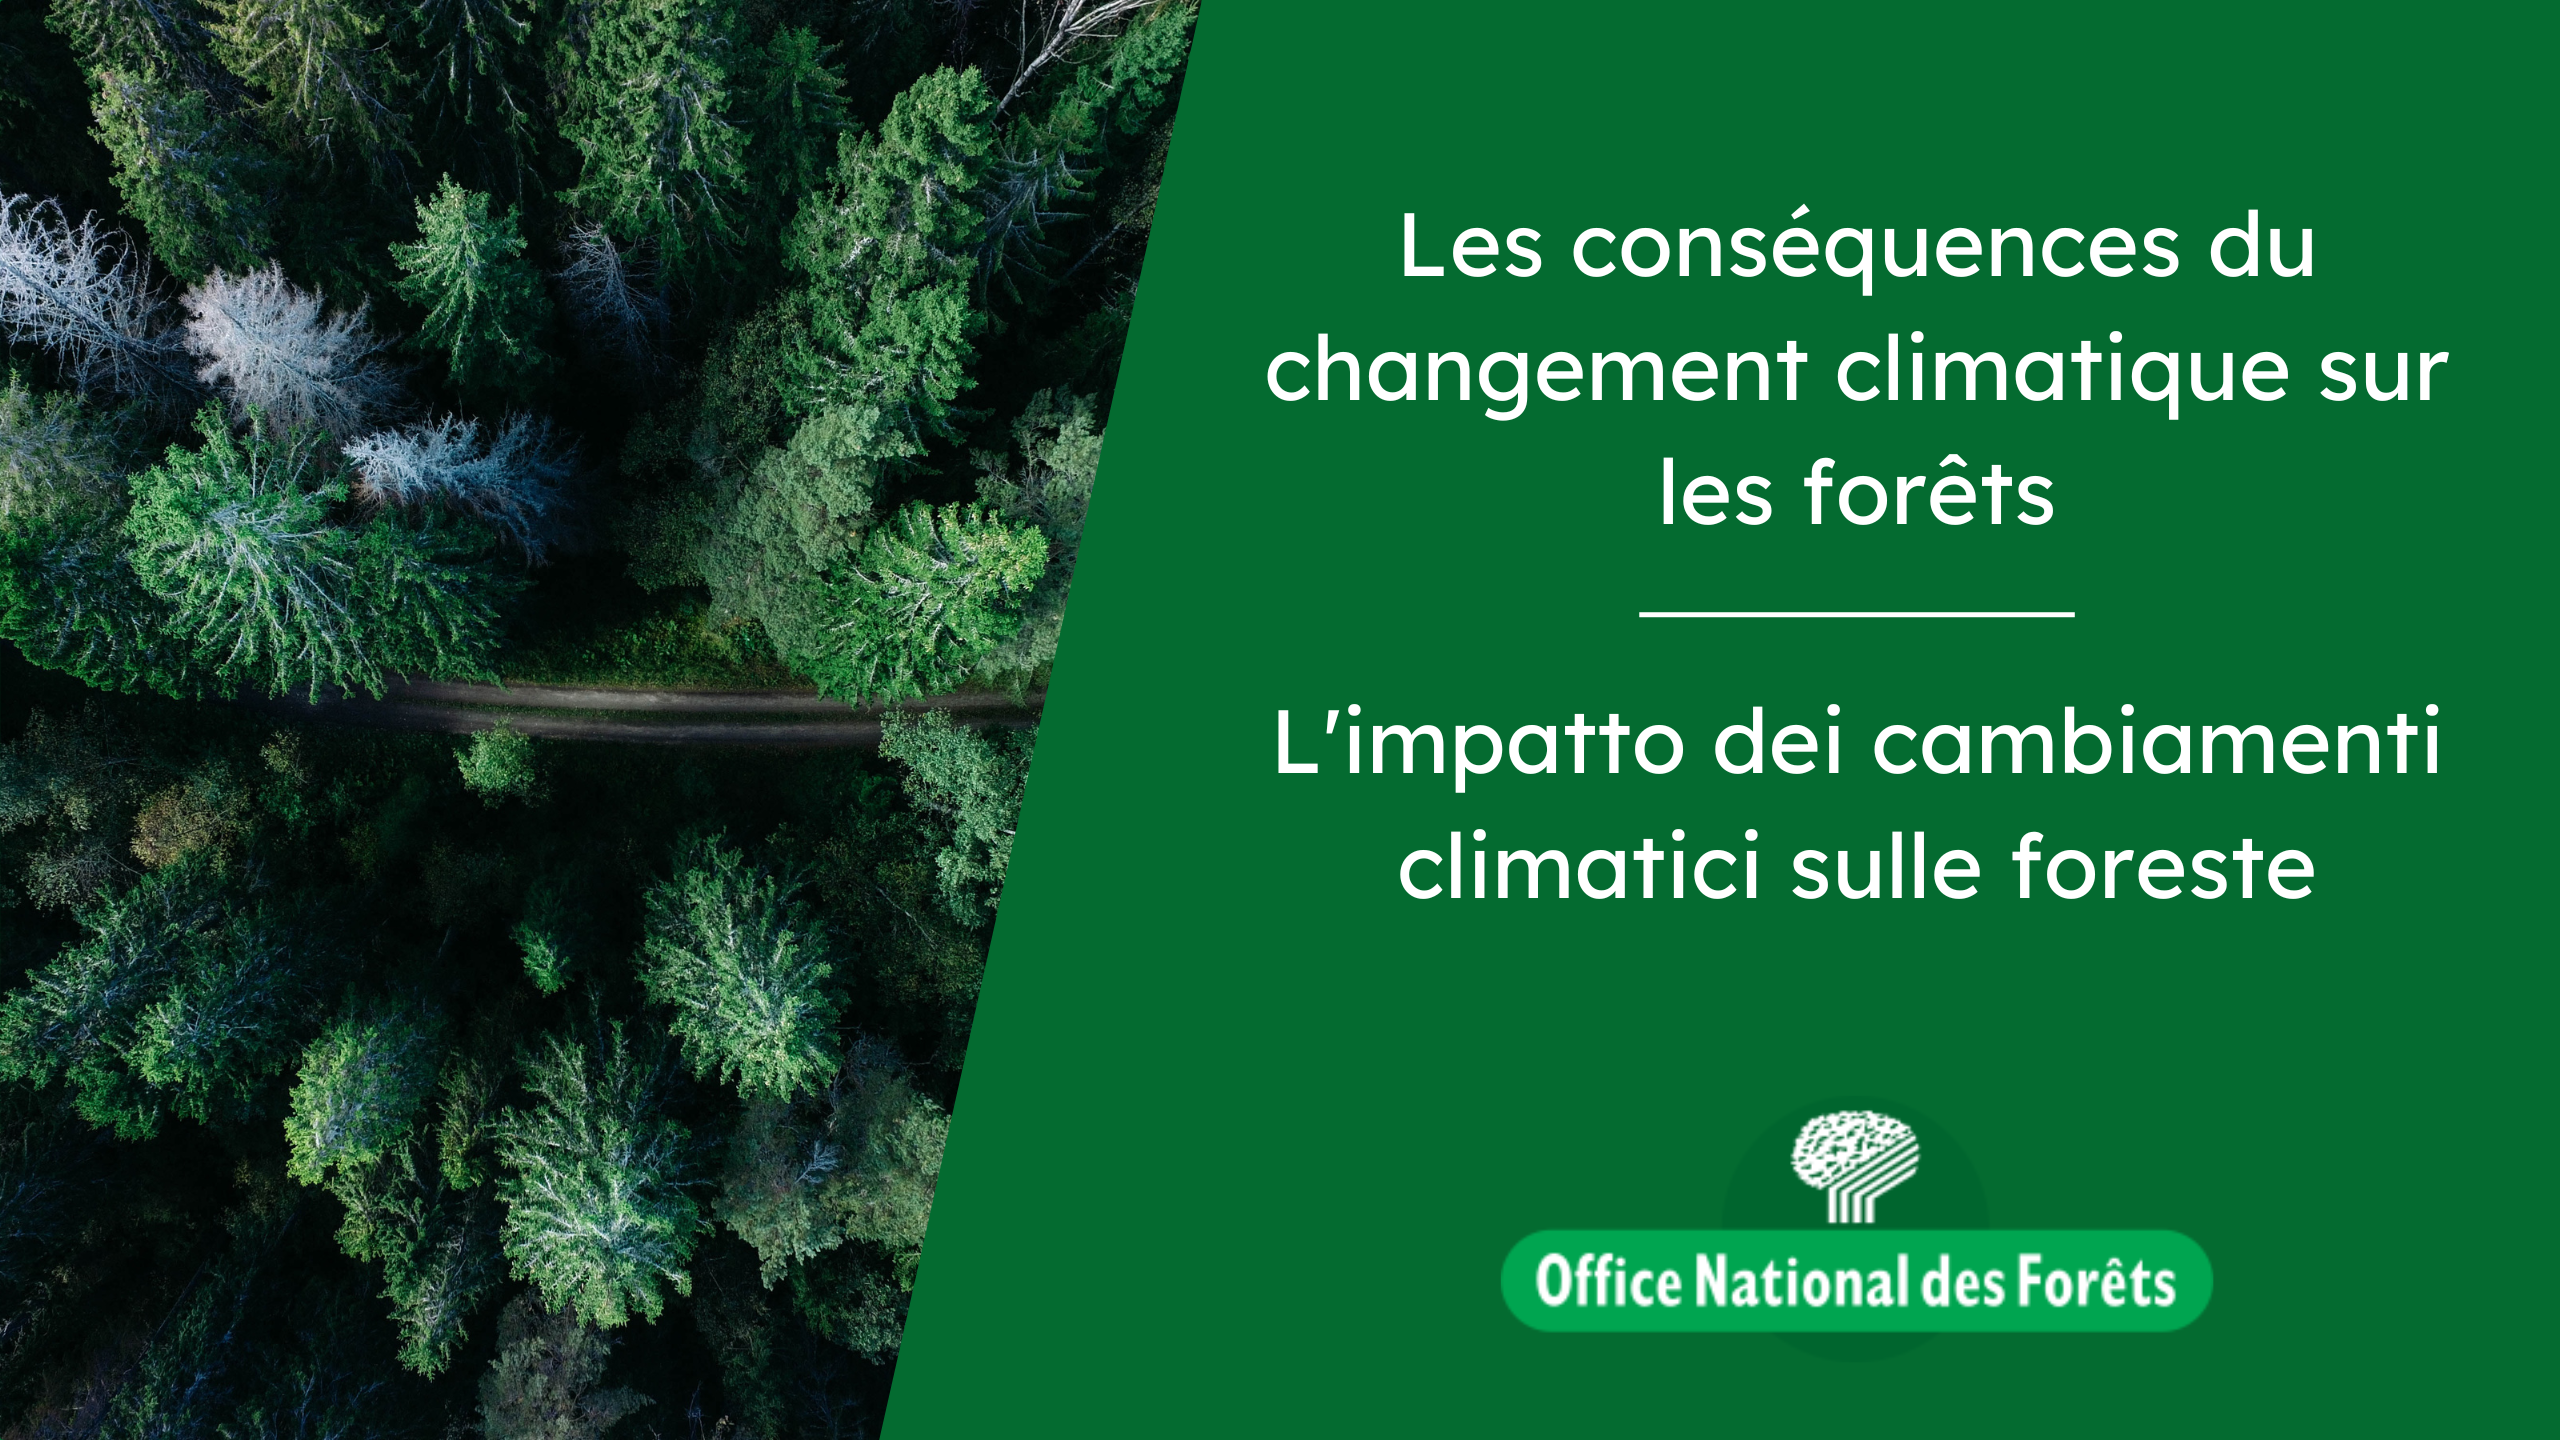 Les conséquences du changement climatique sur les forêts